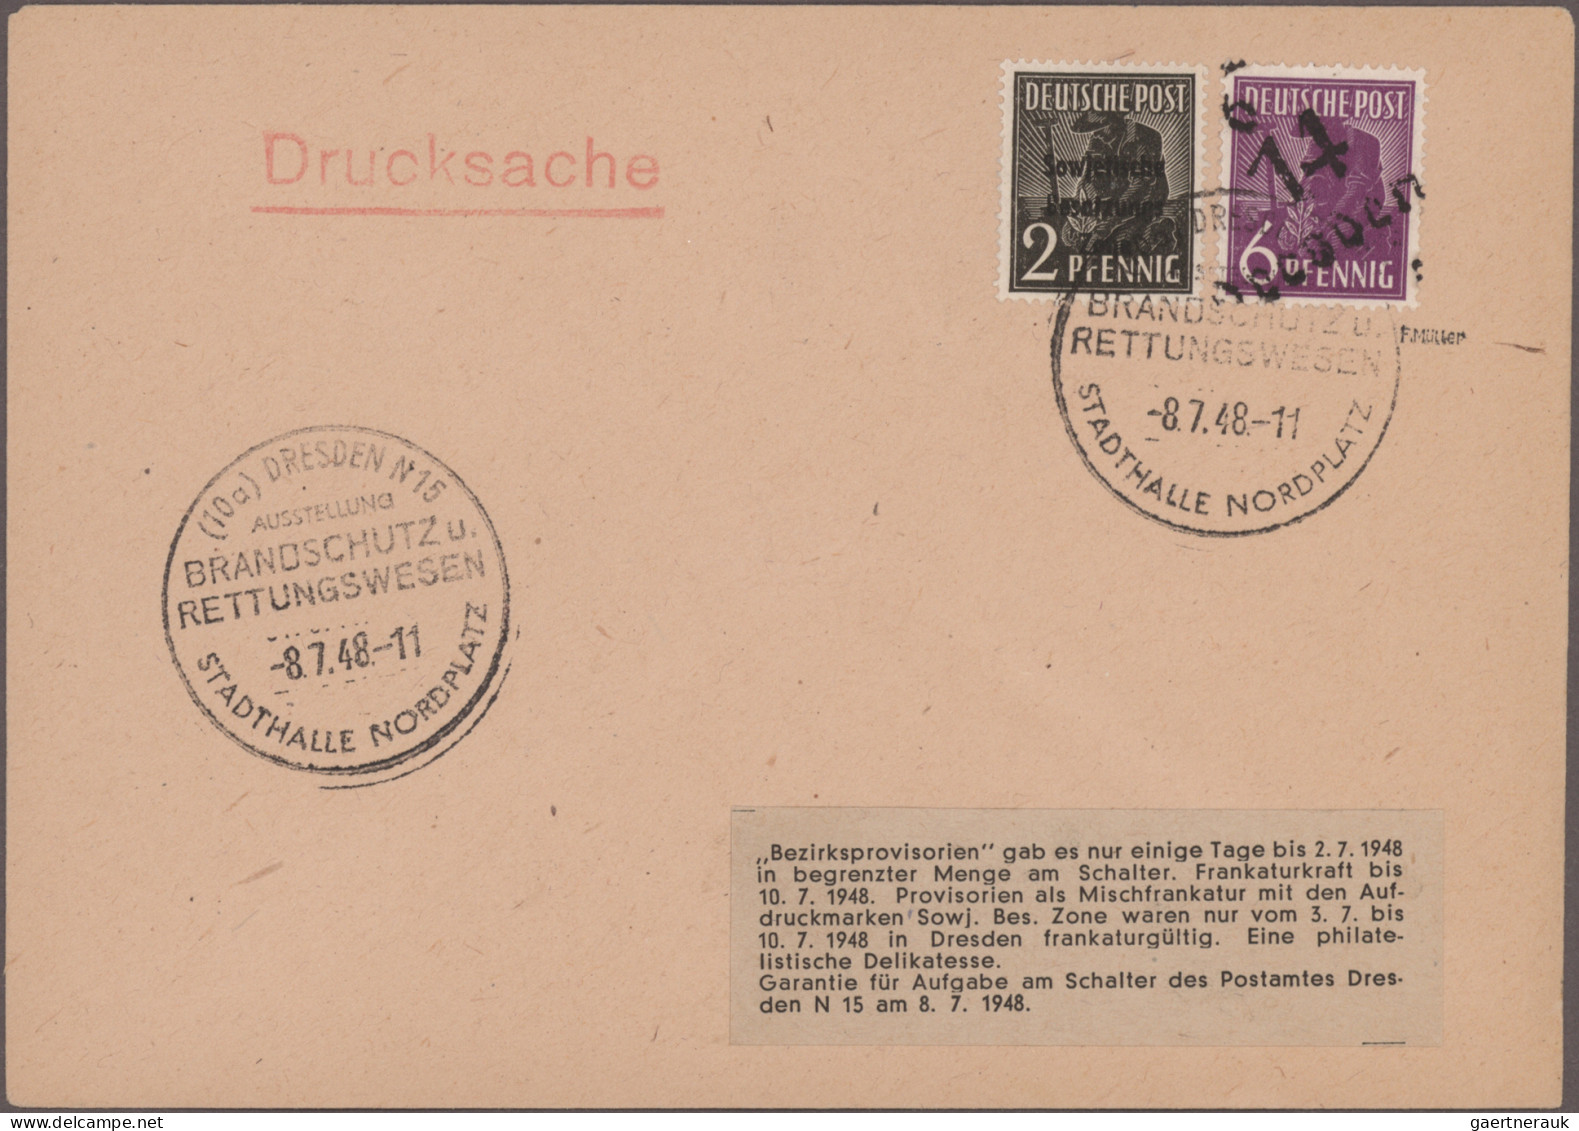 Deutschland: 1870er-1950er Jahre: Einige Hundert Briefe, Postkarten, Ganzsachen - Sammlungen